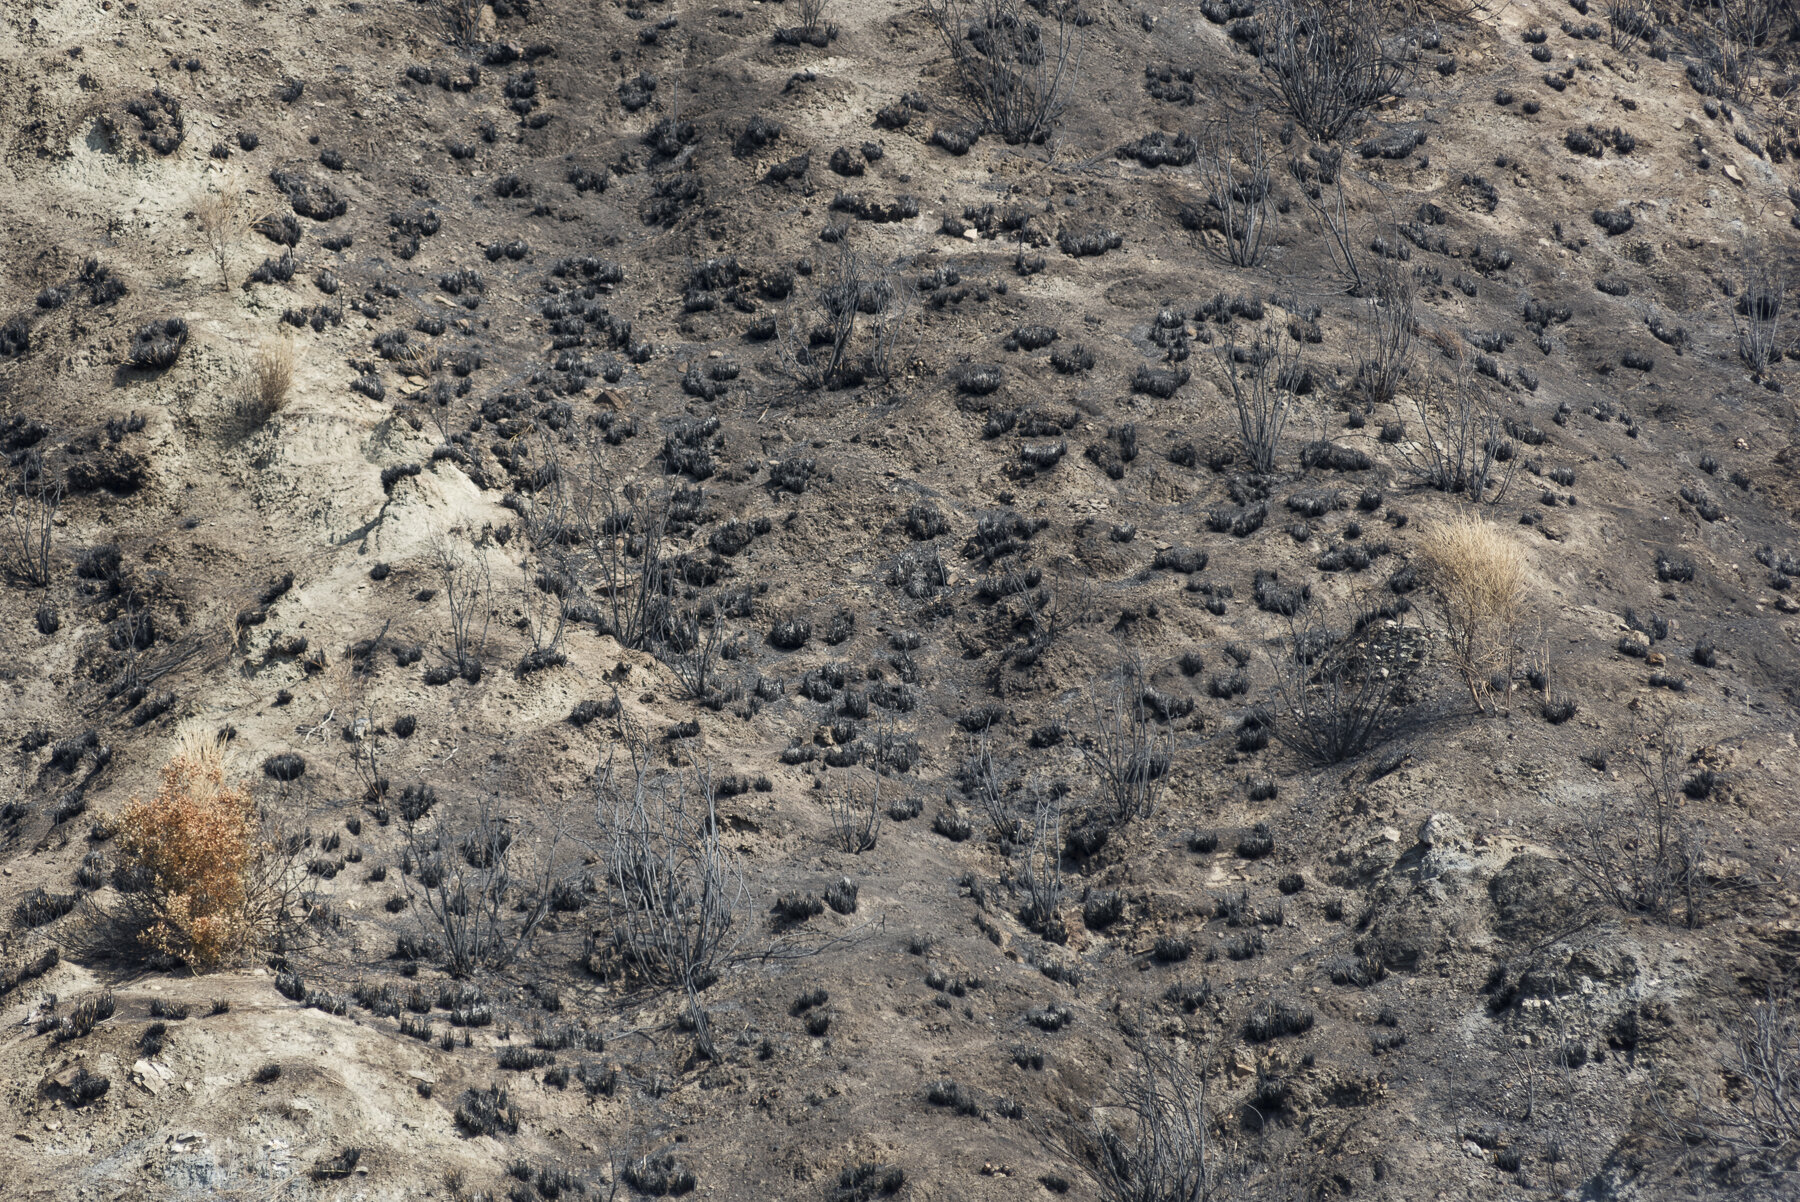  Un terreno bruciato da un incendio nei pressi di Condofuri Superiore, ai confini del Parco Nazionale dell’Aspromonte, 4 agosto 2018.Dopo un incendio, ci vogliono circa trent’anni perché la foresta ricresca; nel 2017, un sesto della superficie boschi